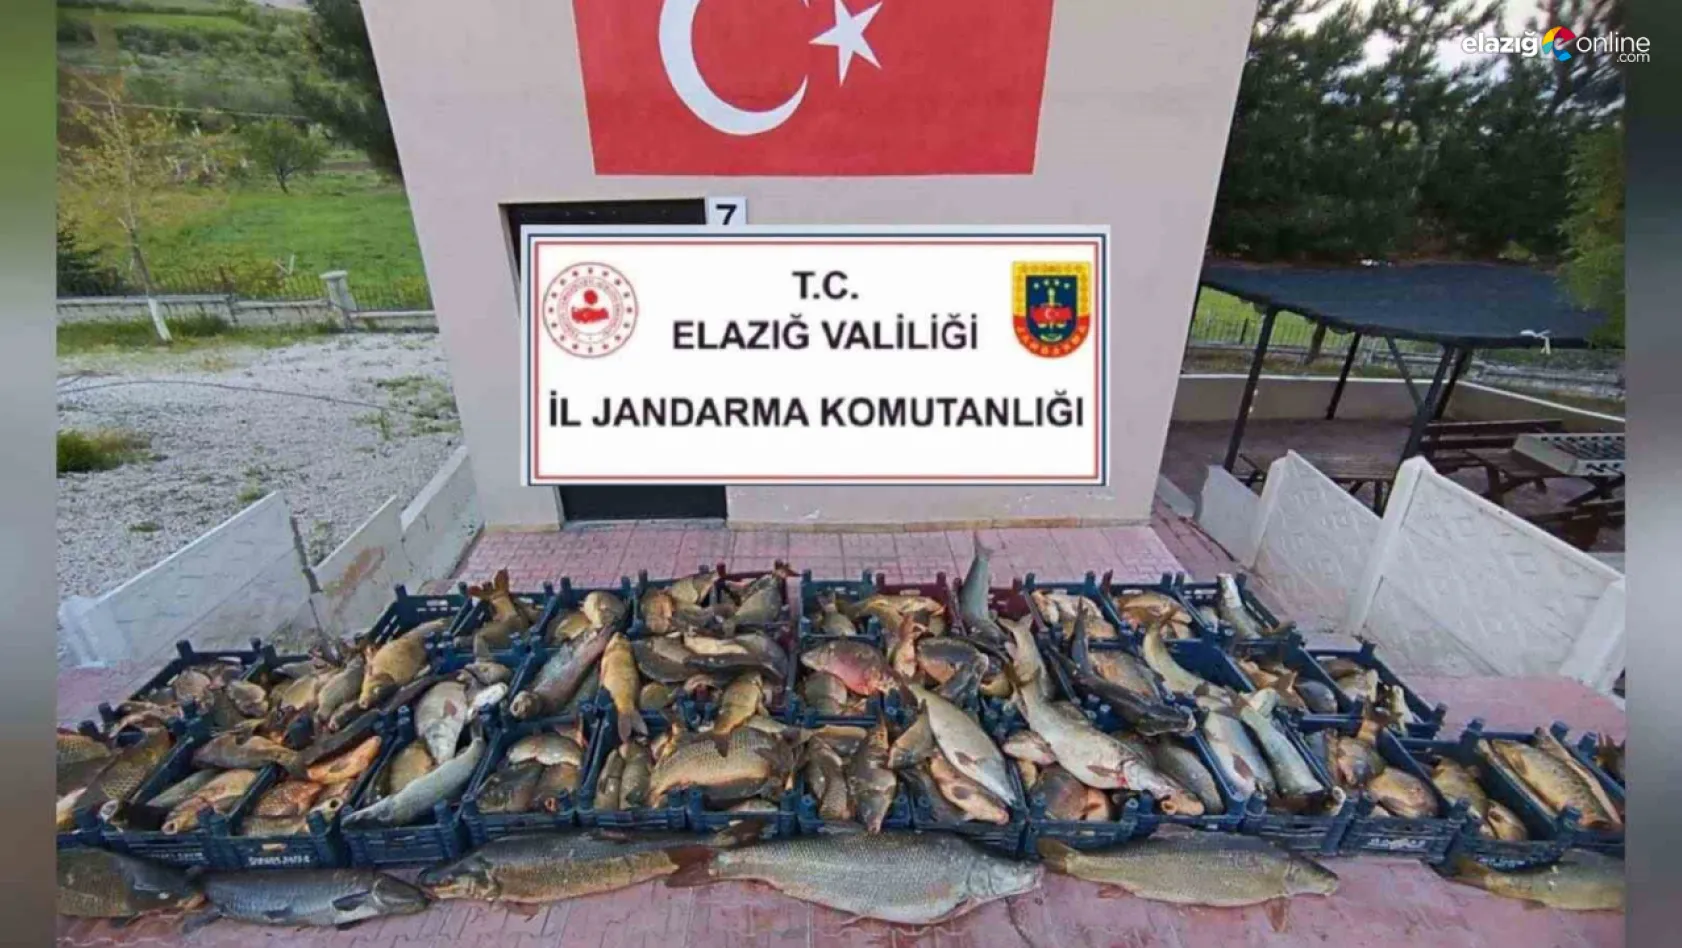 Elazığ'da kaçak balık avına 16 bin lira ceza